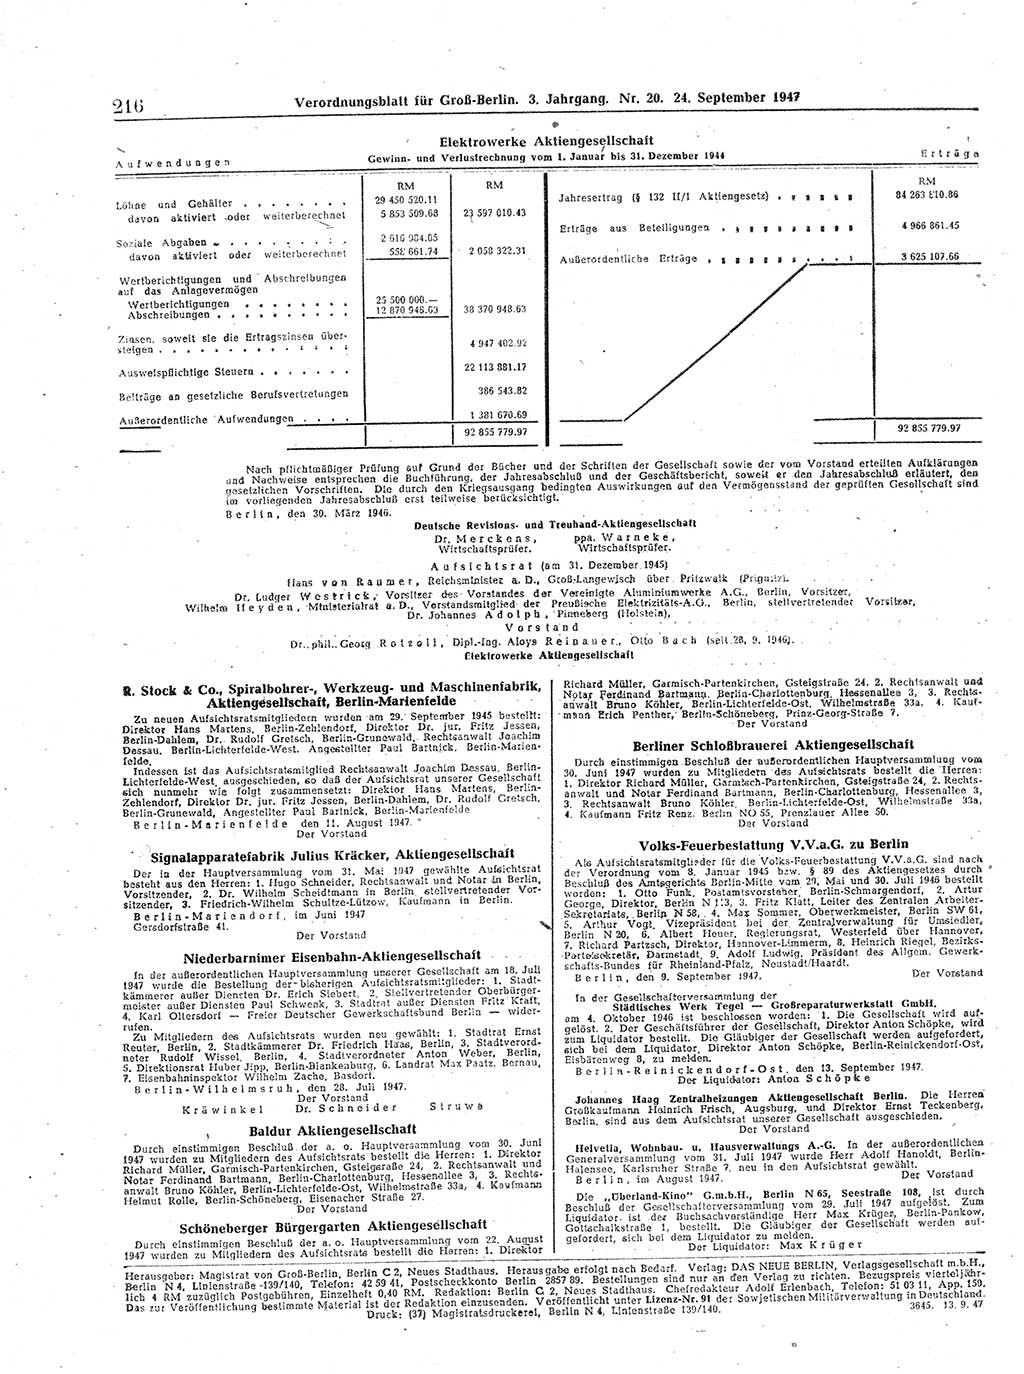 Verordnungsblatt (VOBl.) für Groß-Berlin 1947, Seite 216 (VOBl. Bln. 1947, S. 216)